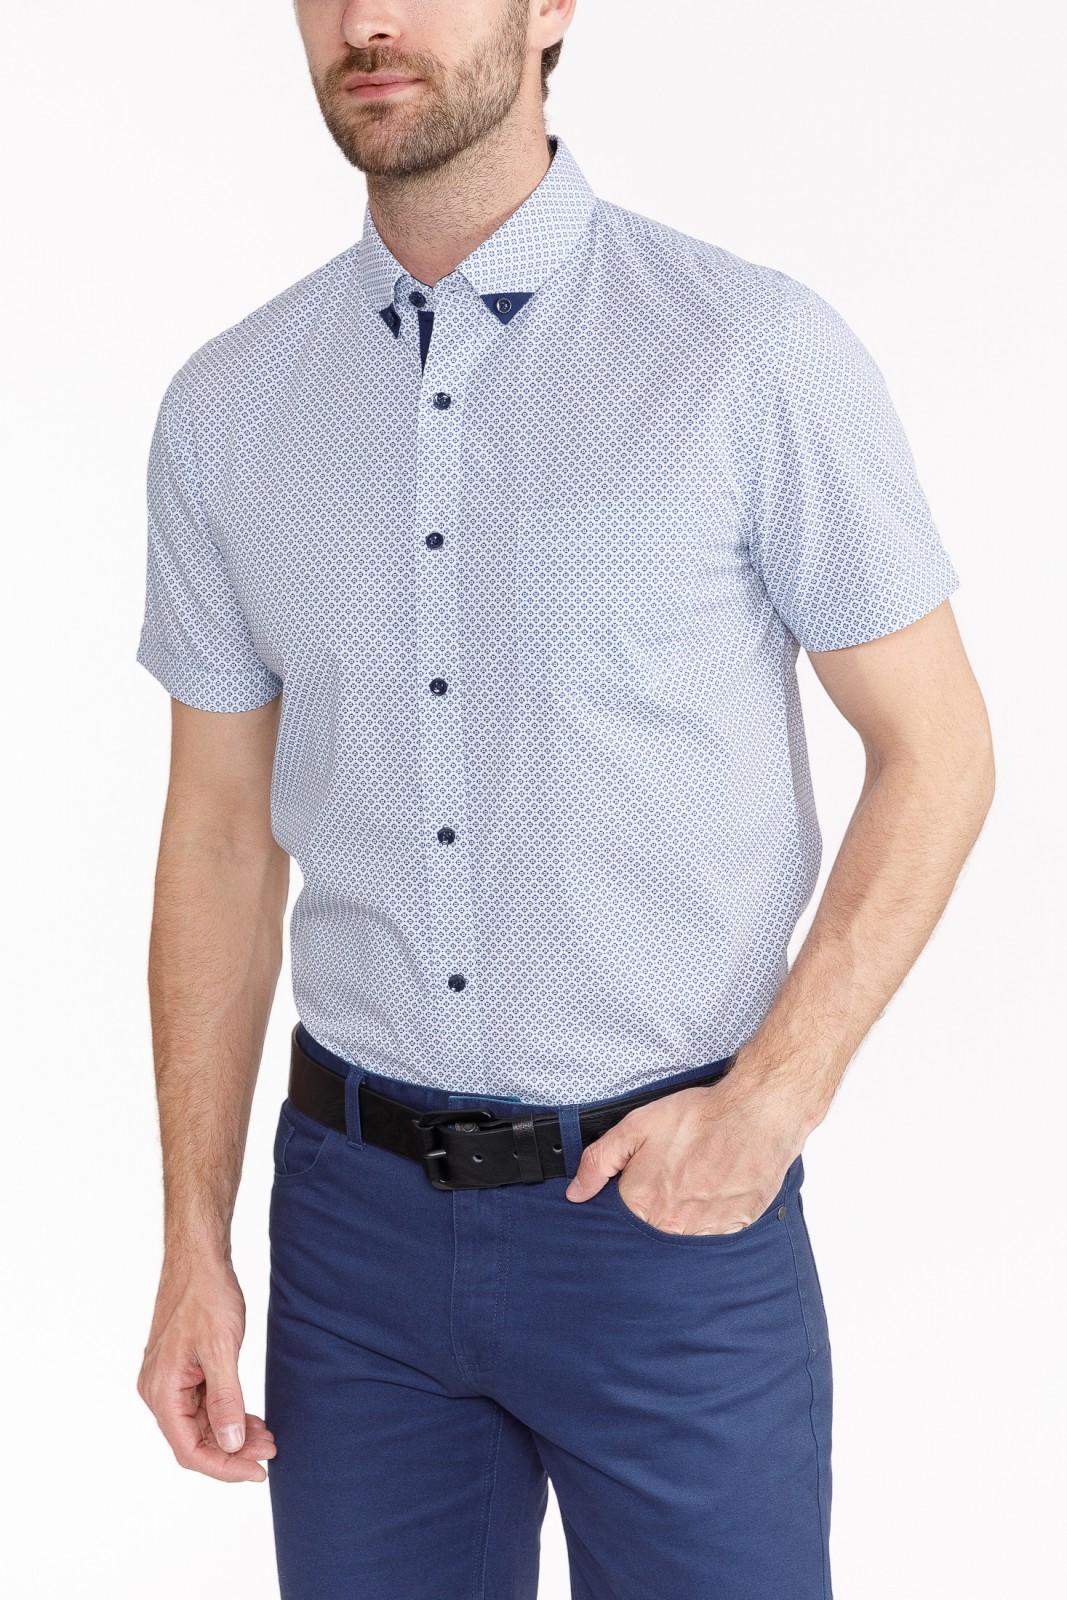 Рубашка с  короткими рукавами zolla 010242259043, цвет светло-голубой, размер S